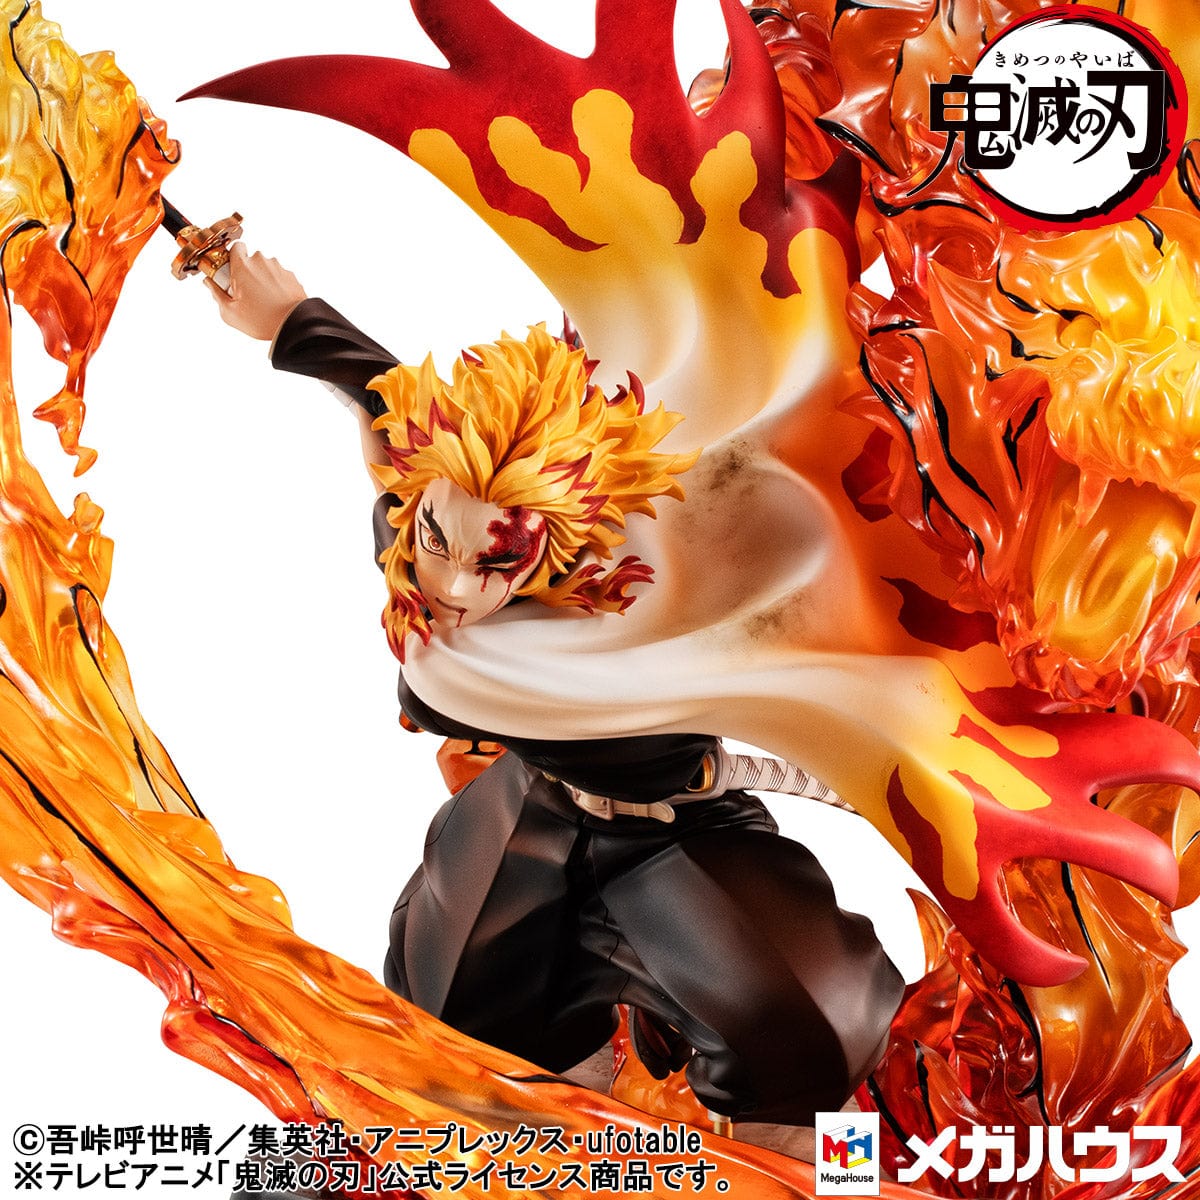 MEGAHOUSE Precious G.E.M. Series: Demon Slayer: Kimetsu no Yaiba - Kyojuro Rengoku Fifth Form: Flame Tiger